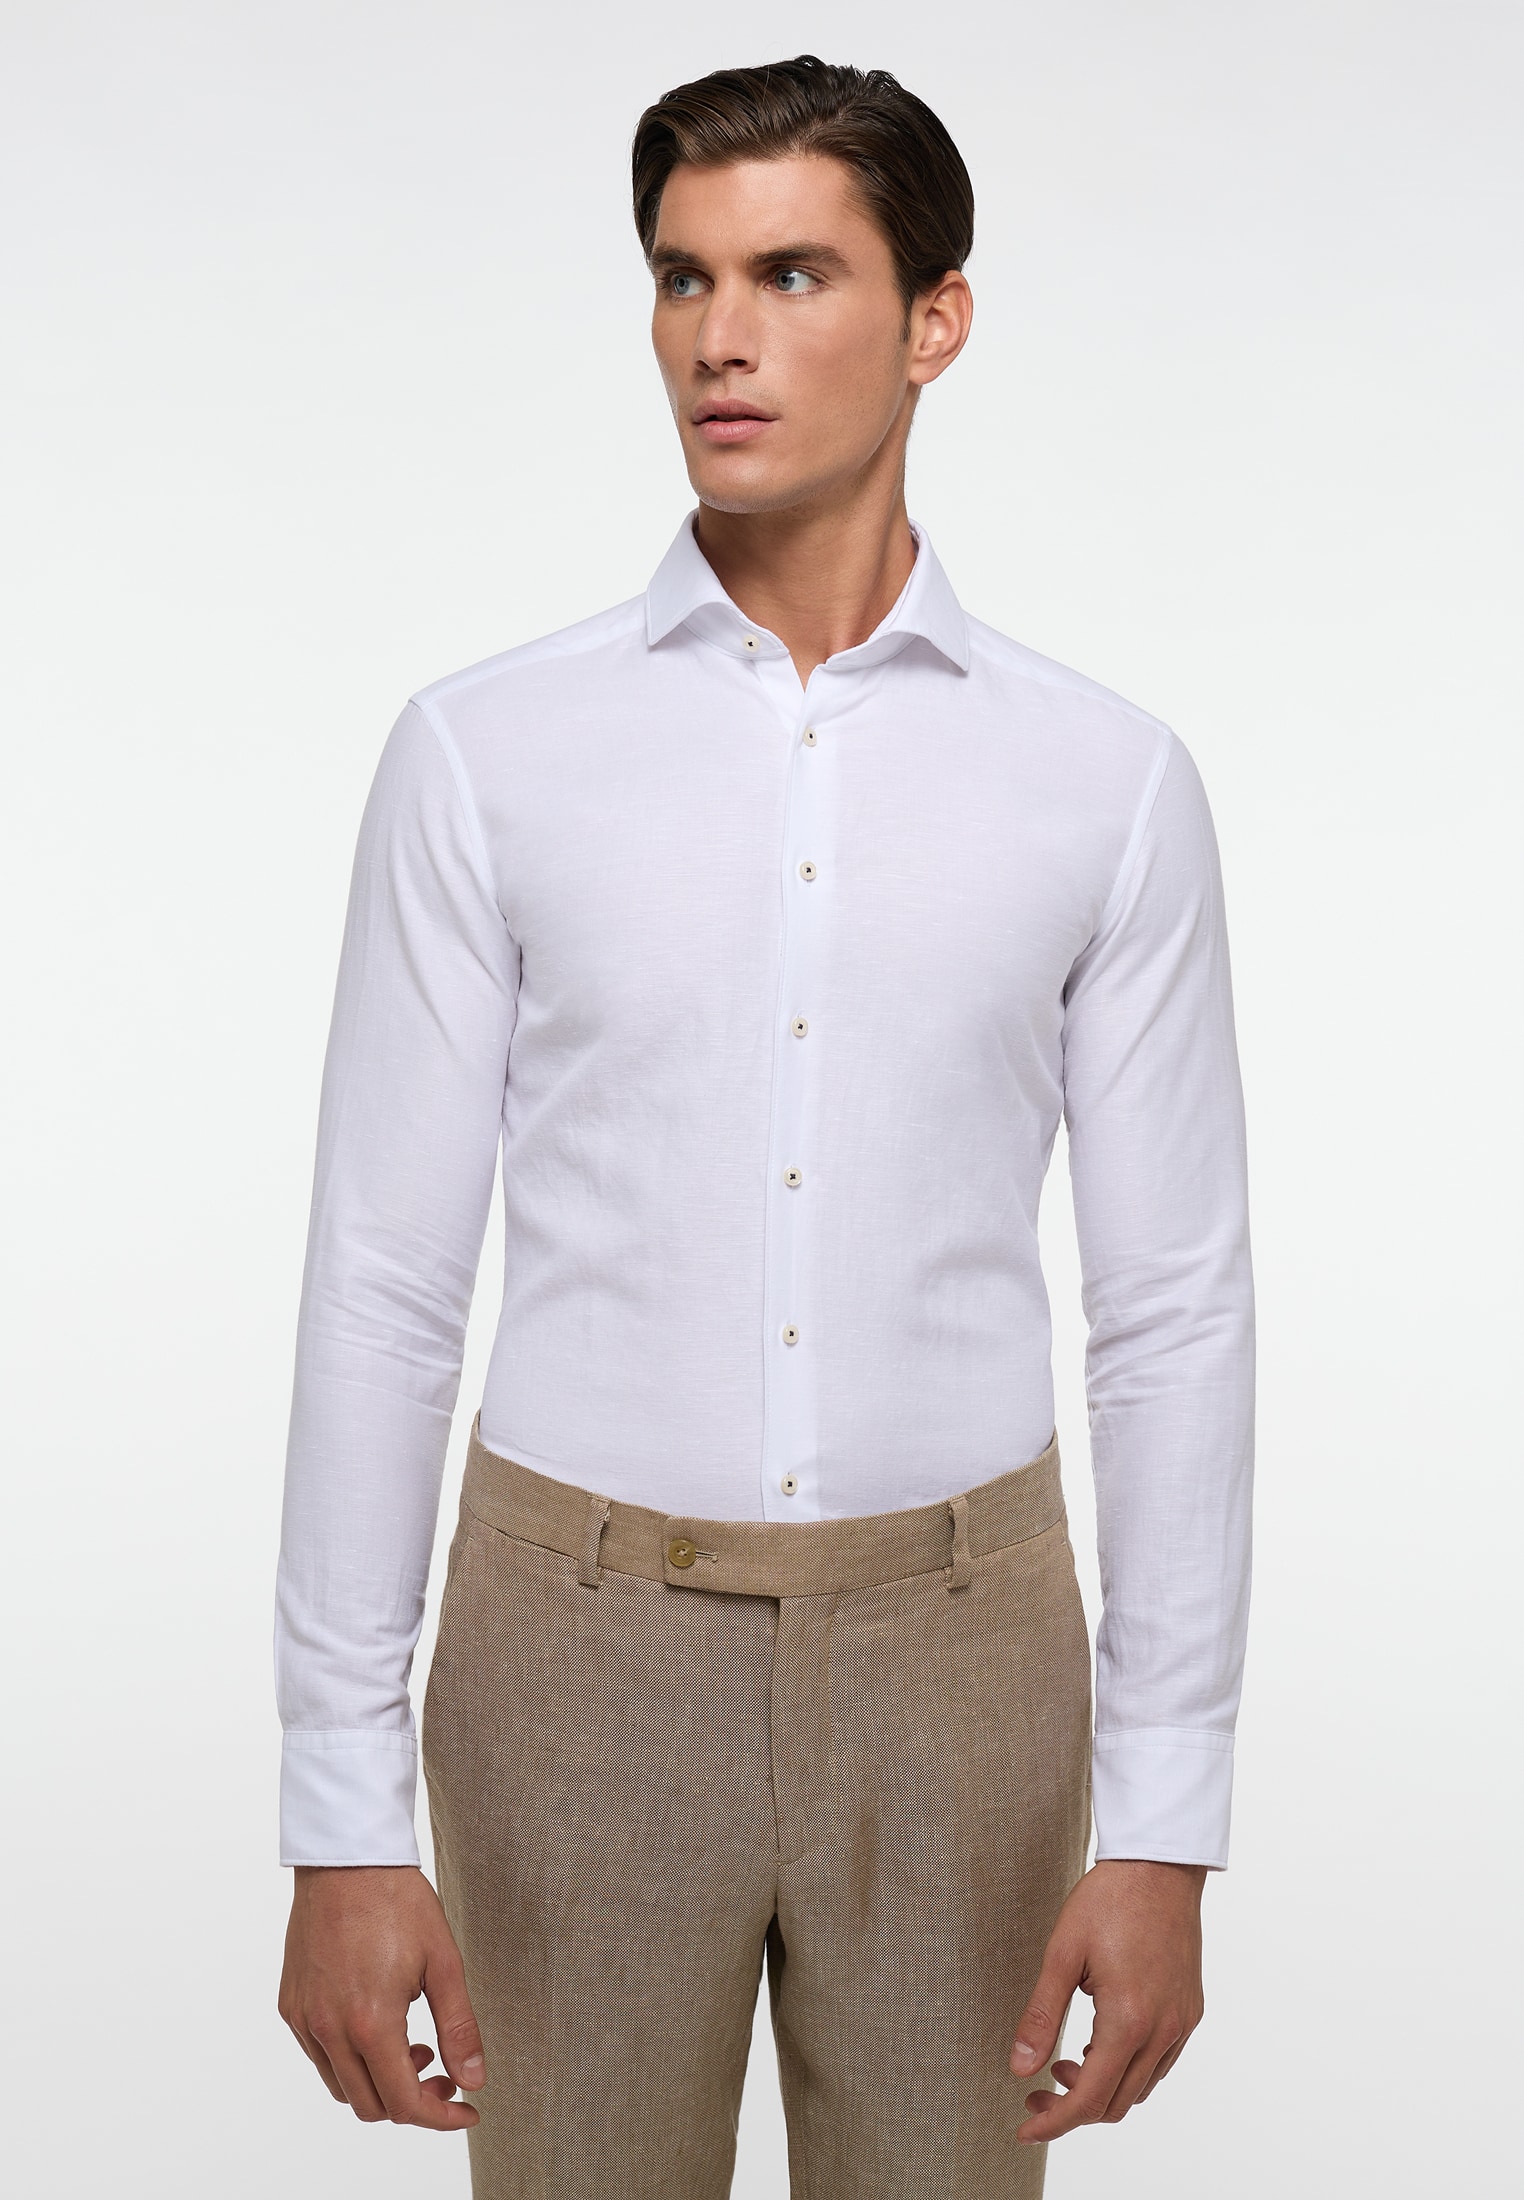 SLIM FIT Linen Shirt sleeve | white in | white | 1SH00626-00-01-39-1/1 39 | plain long